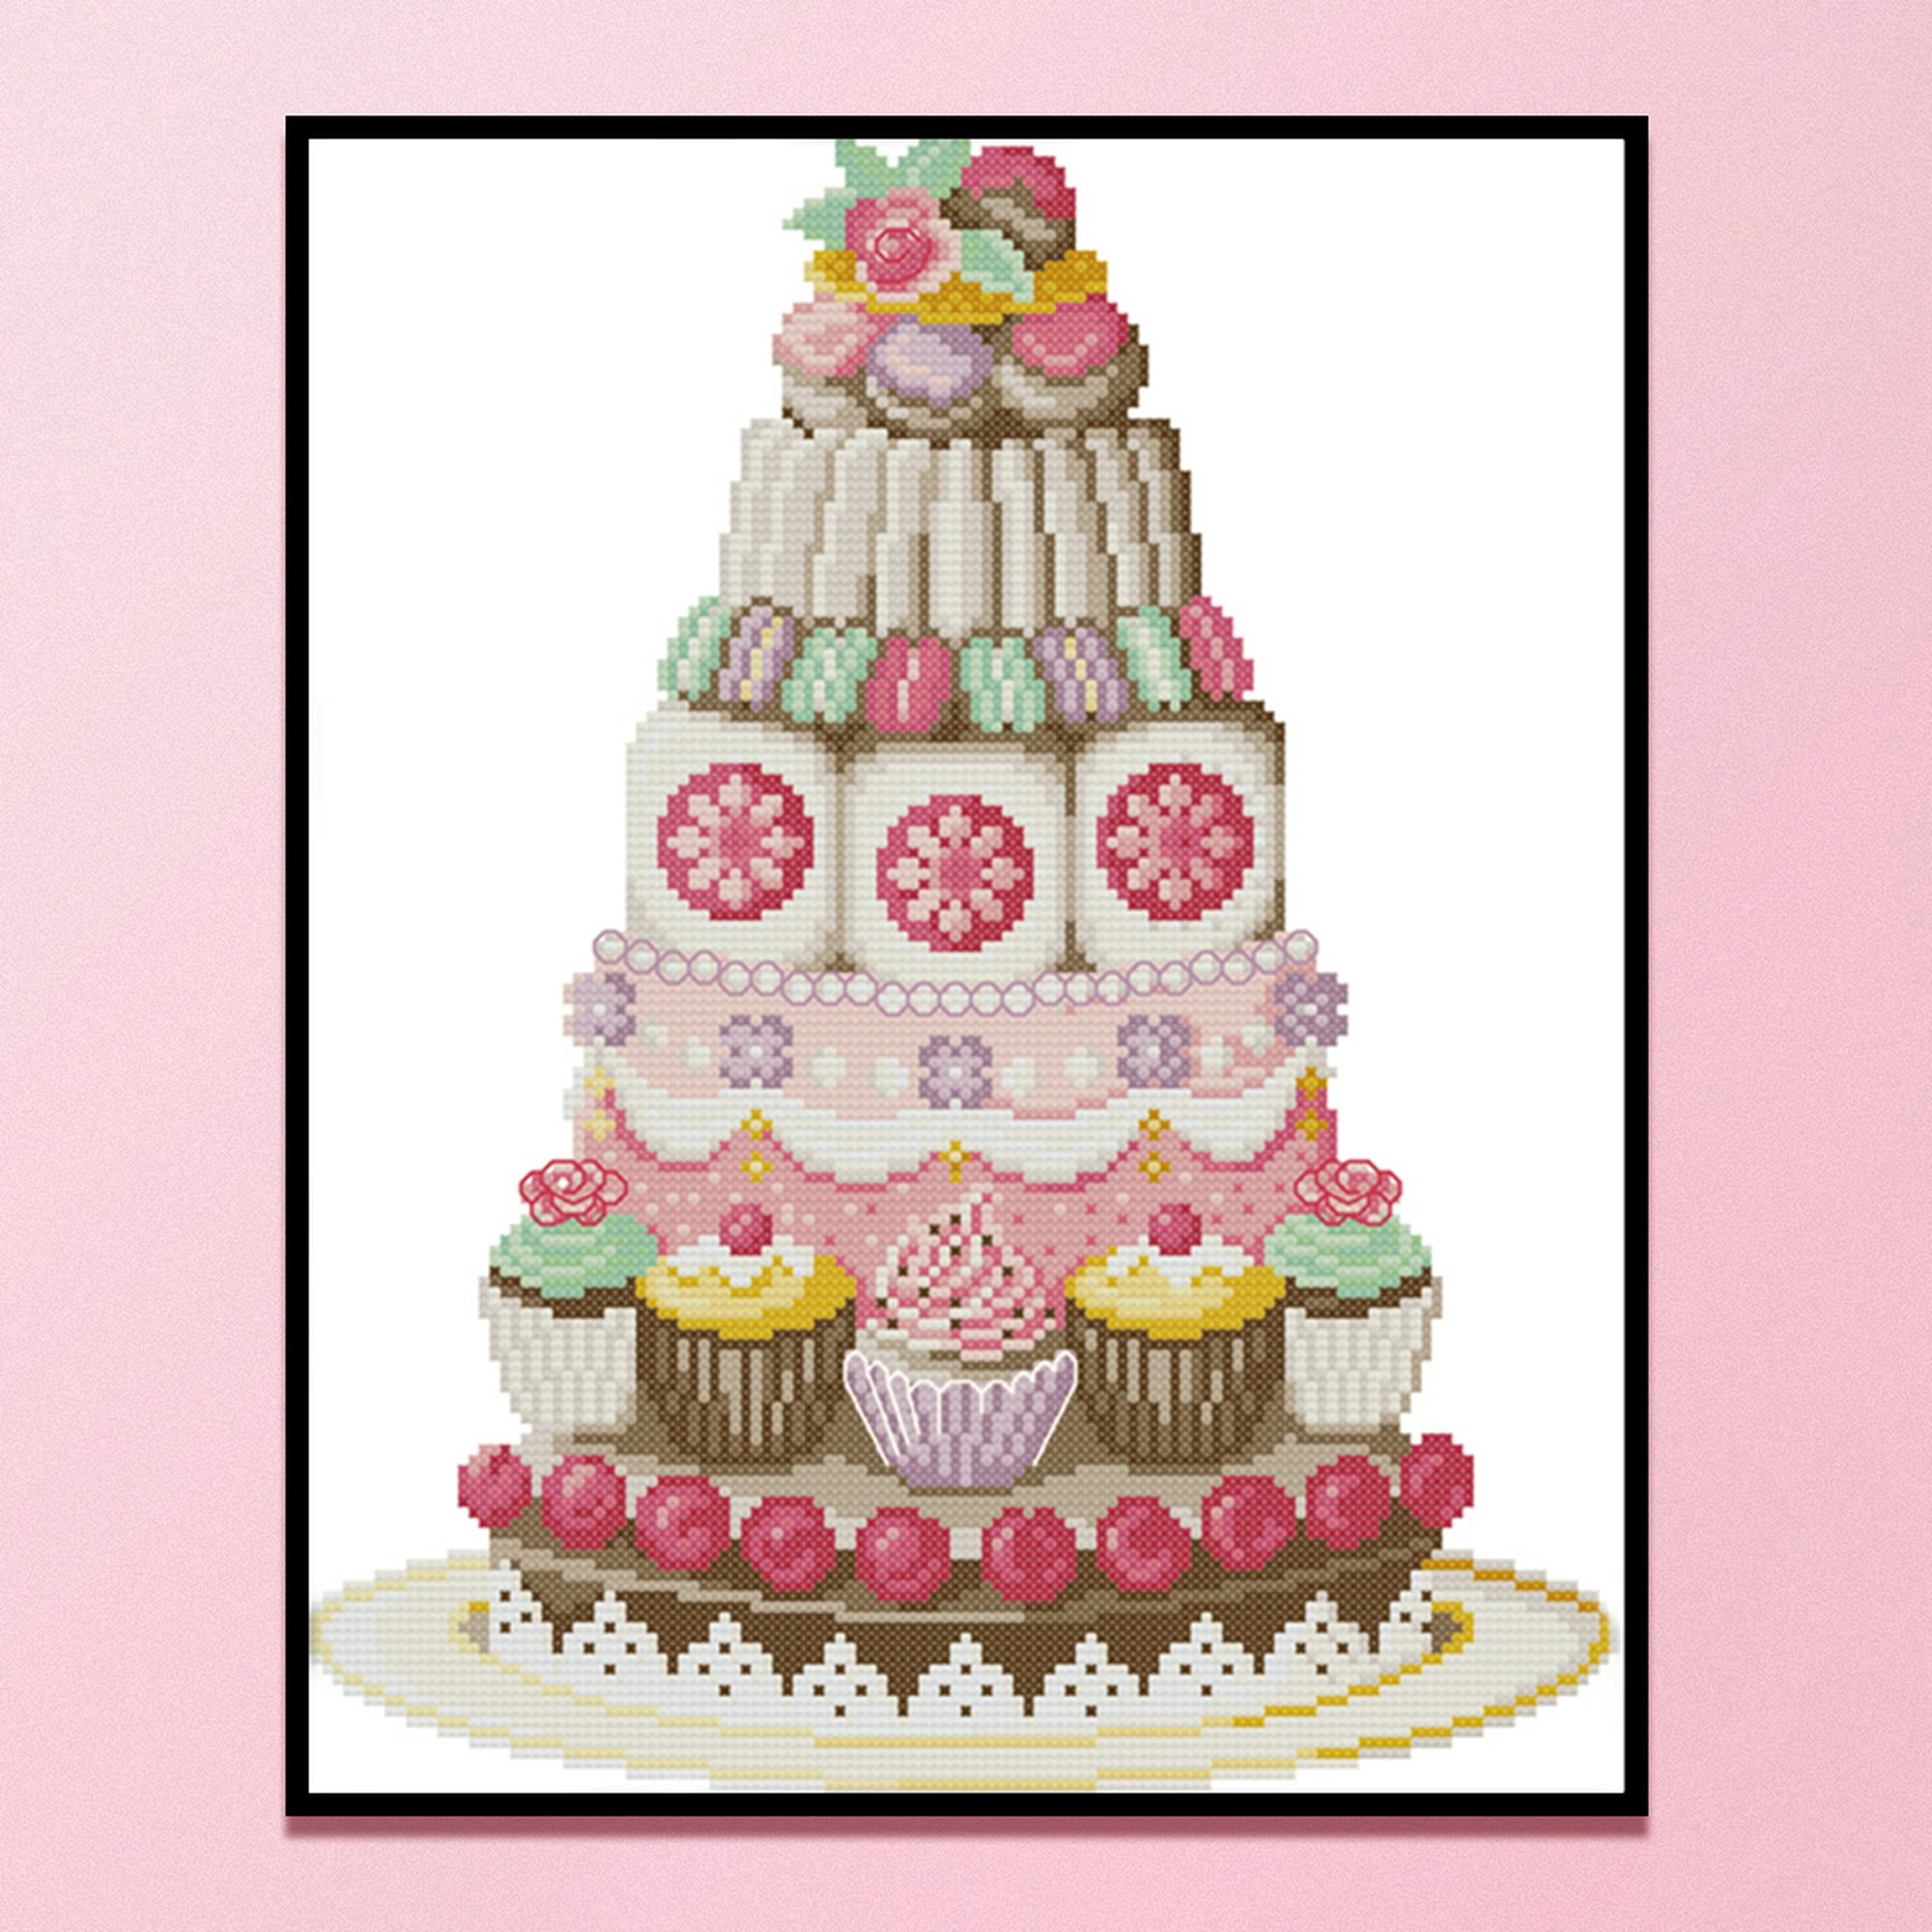 Stitch - Juego de decoración para pastel de cumpleaños con figuras y  accesorios decorativos (diseño único)